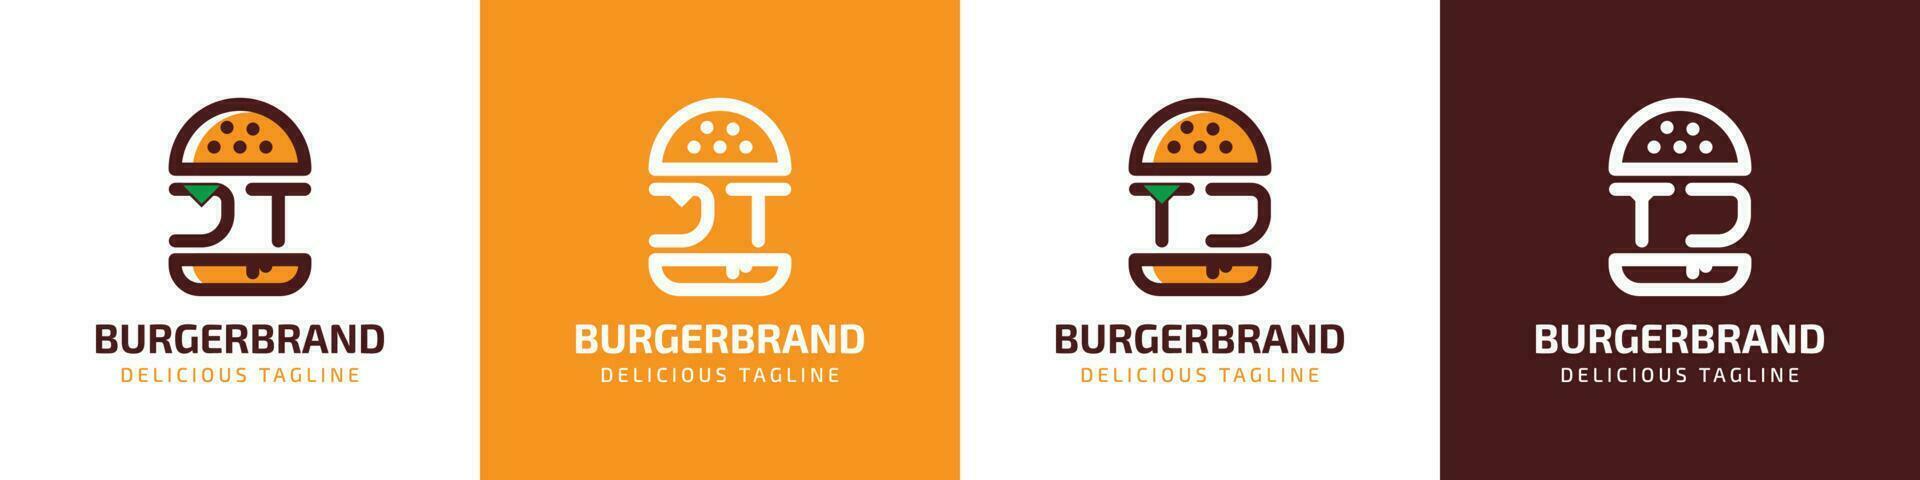 lettera jt e tj hamburger logo, adatto per qualunque attività commerciale relazionato per hamburger con jt o tj iniziali. vettore